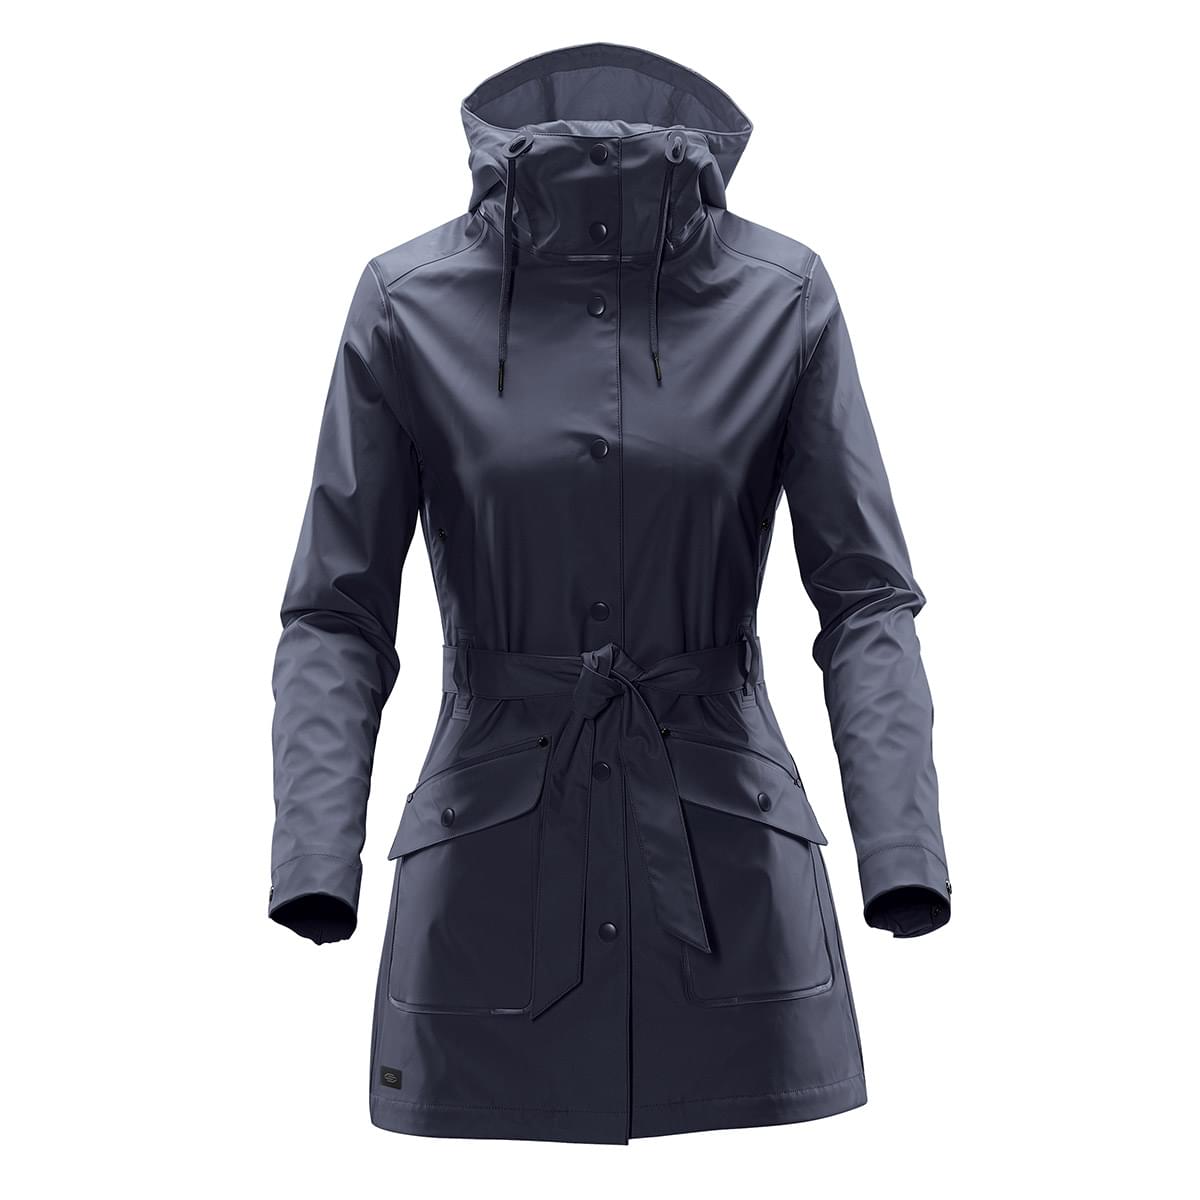 Rain Gear, Waterproof Rain Jacket Navy